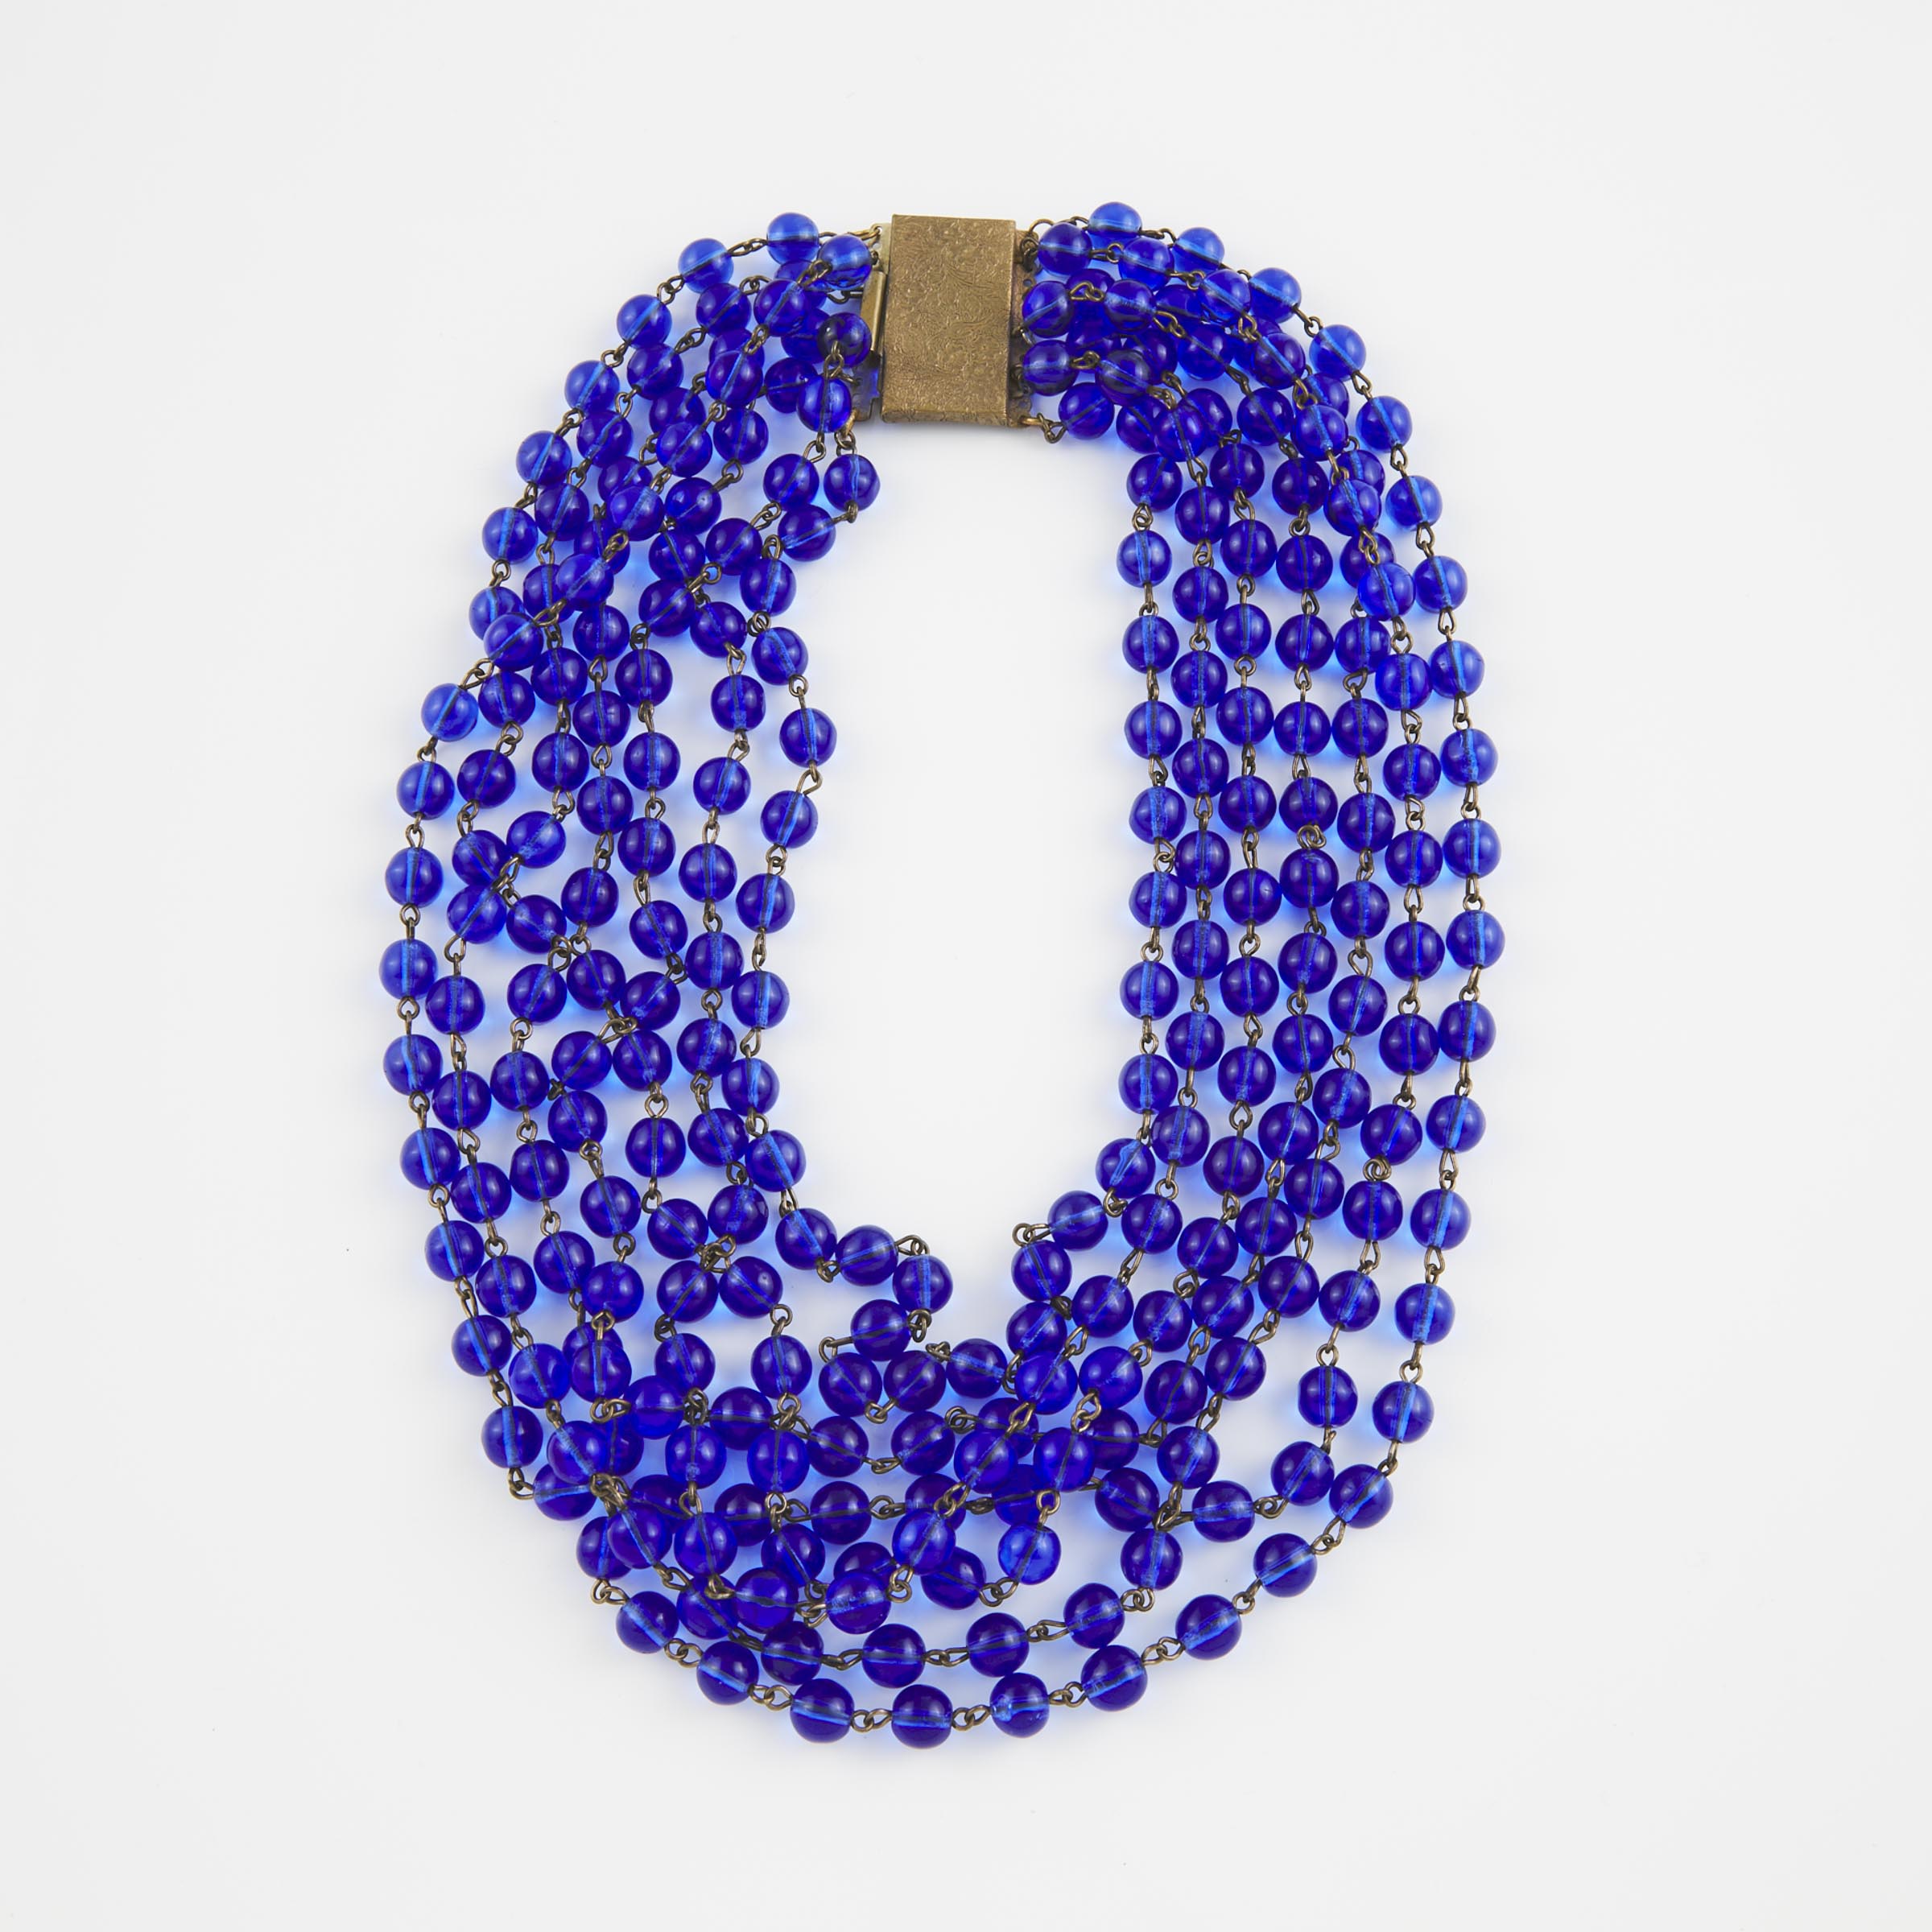 7-Strand Cobalt Blue Glass Bead Necklace